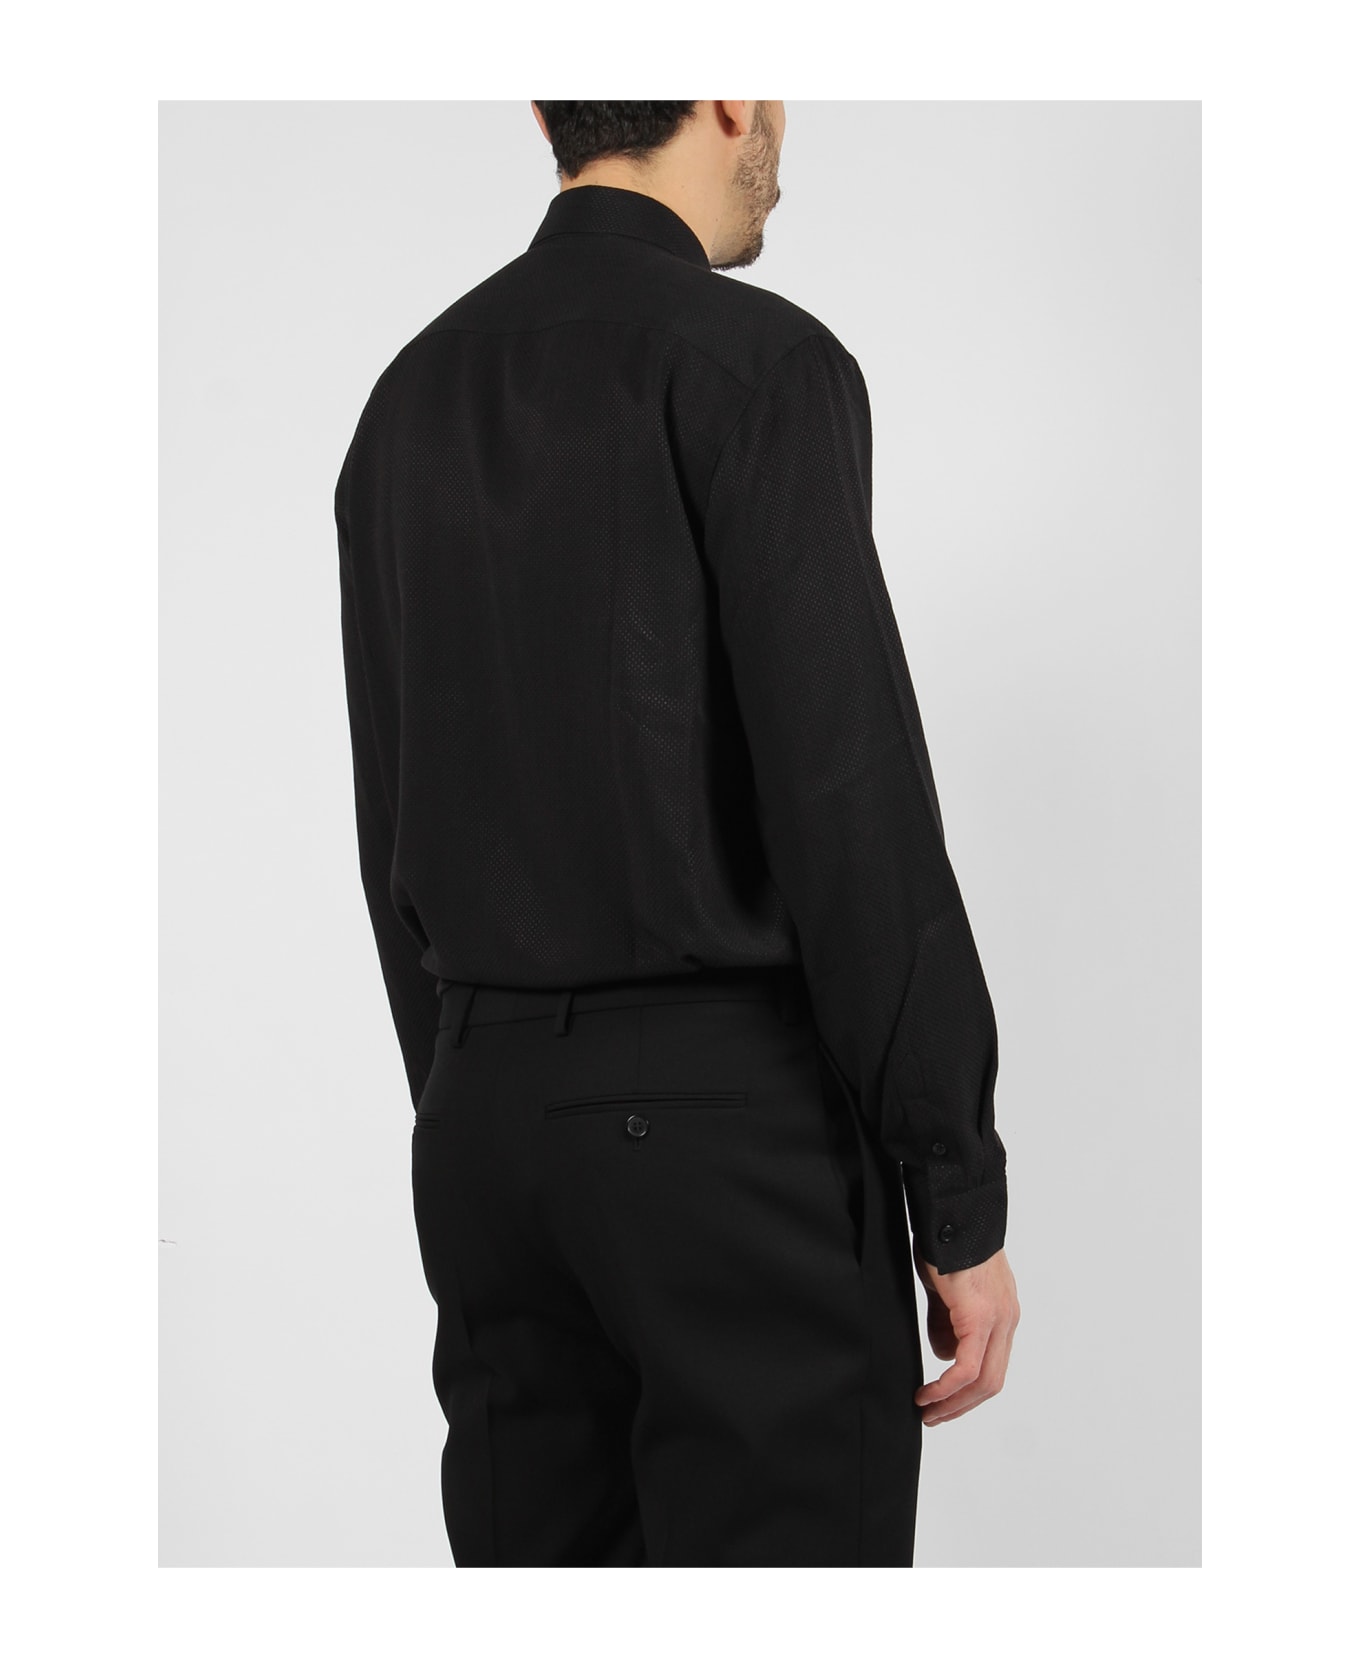 Saint Laurent Piqué Shirt - Black